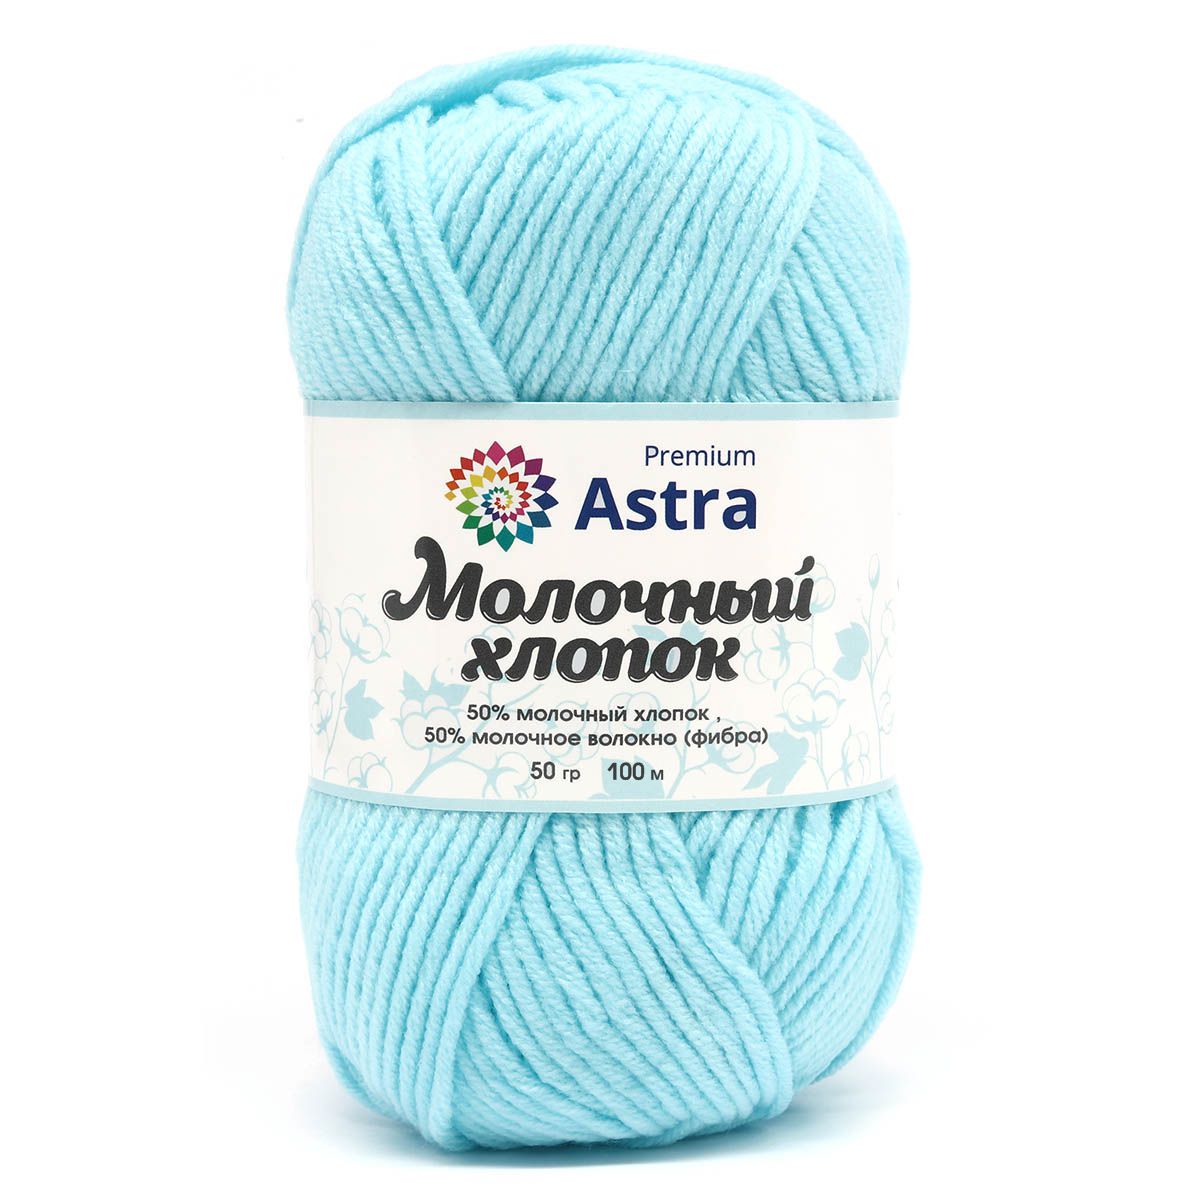 Пряжа для вязания Astra Premium milk cotton хлопок акрил 50 гр 100 м 84 голубой лед 3 мотка - фото 3